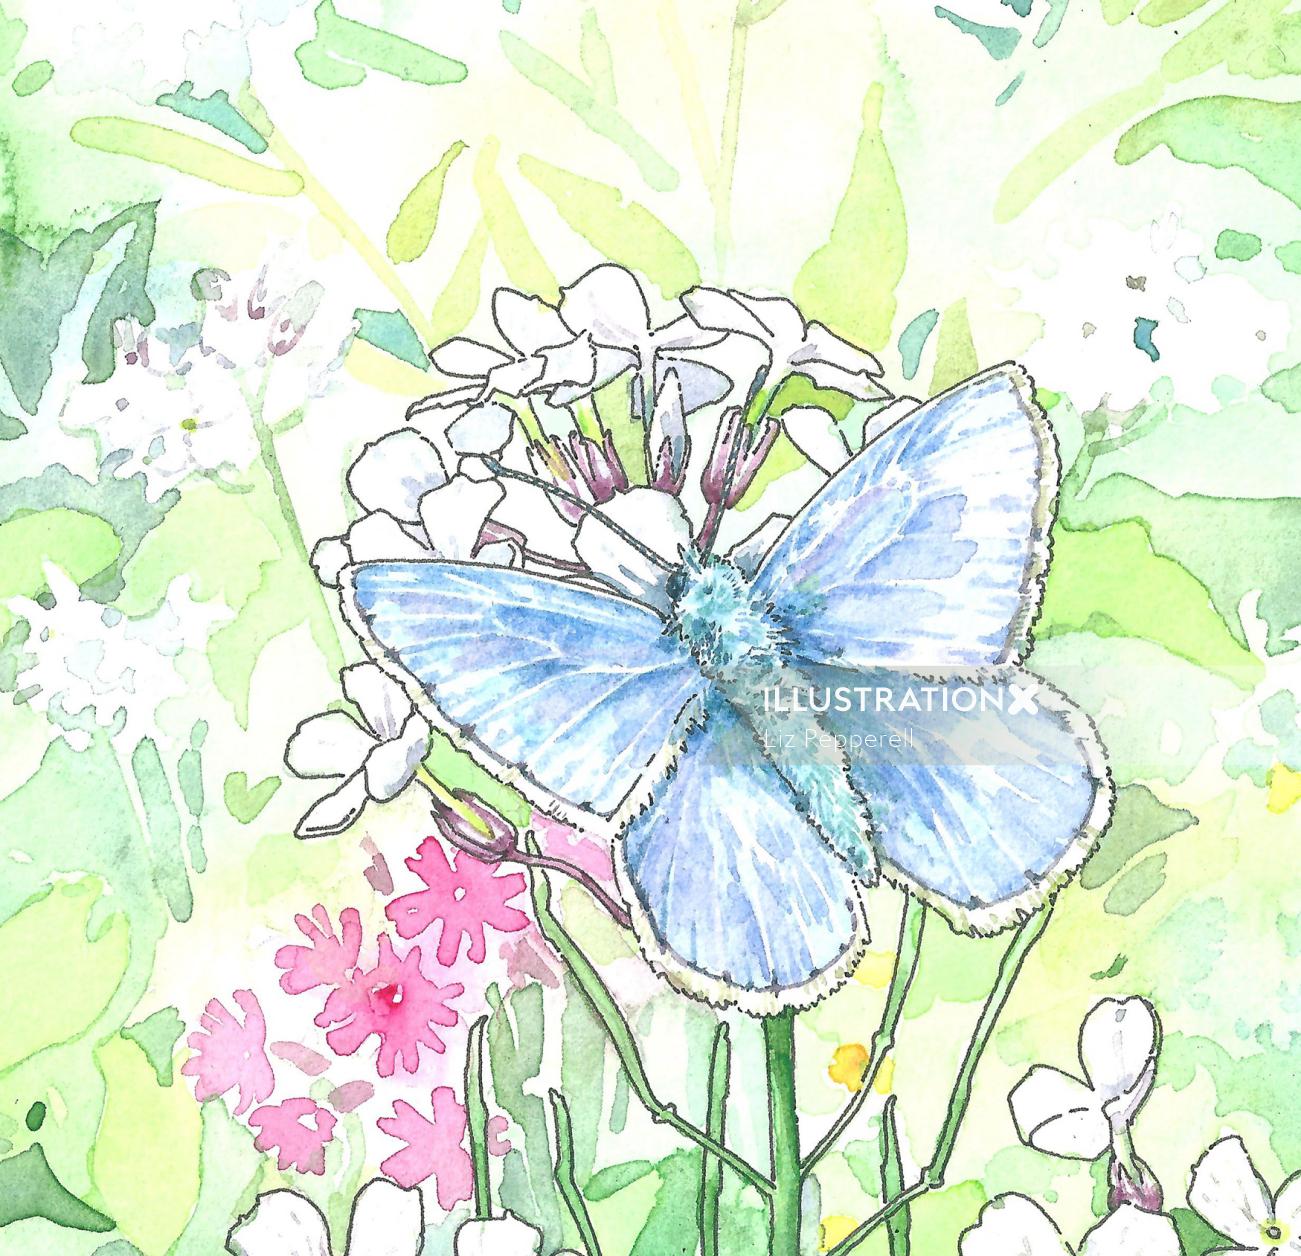 美しい青い蝶